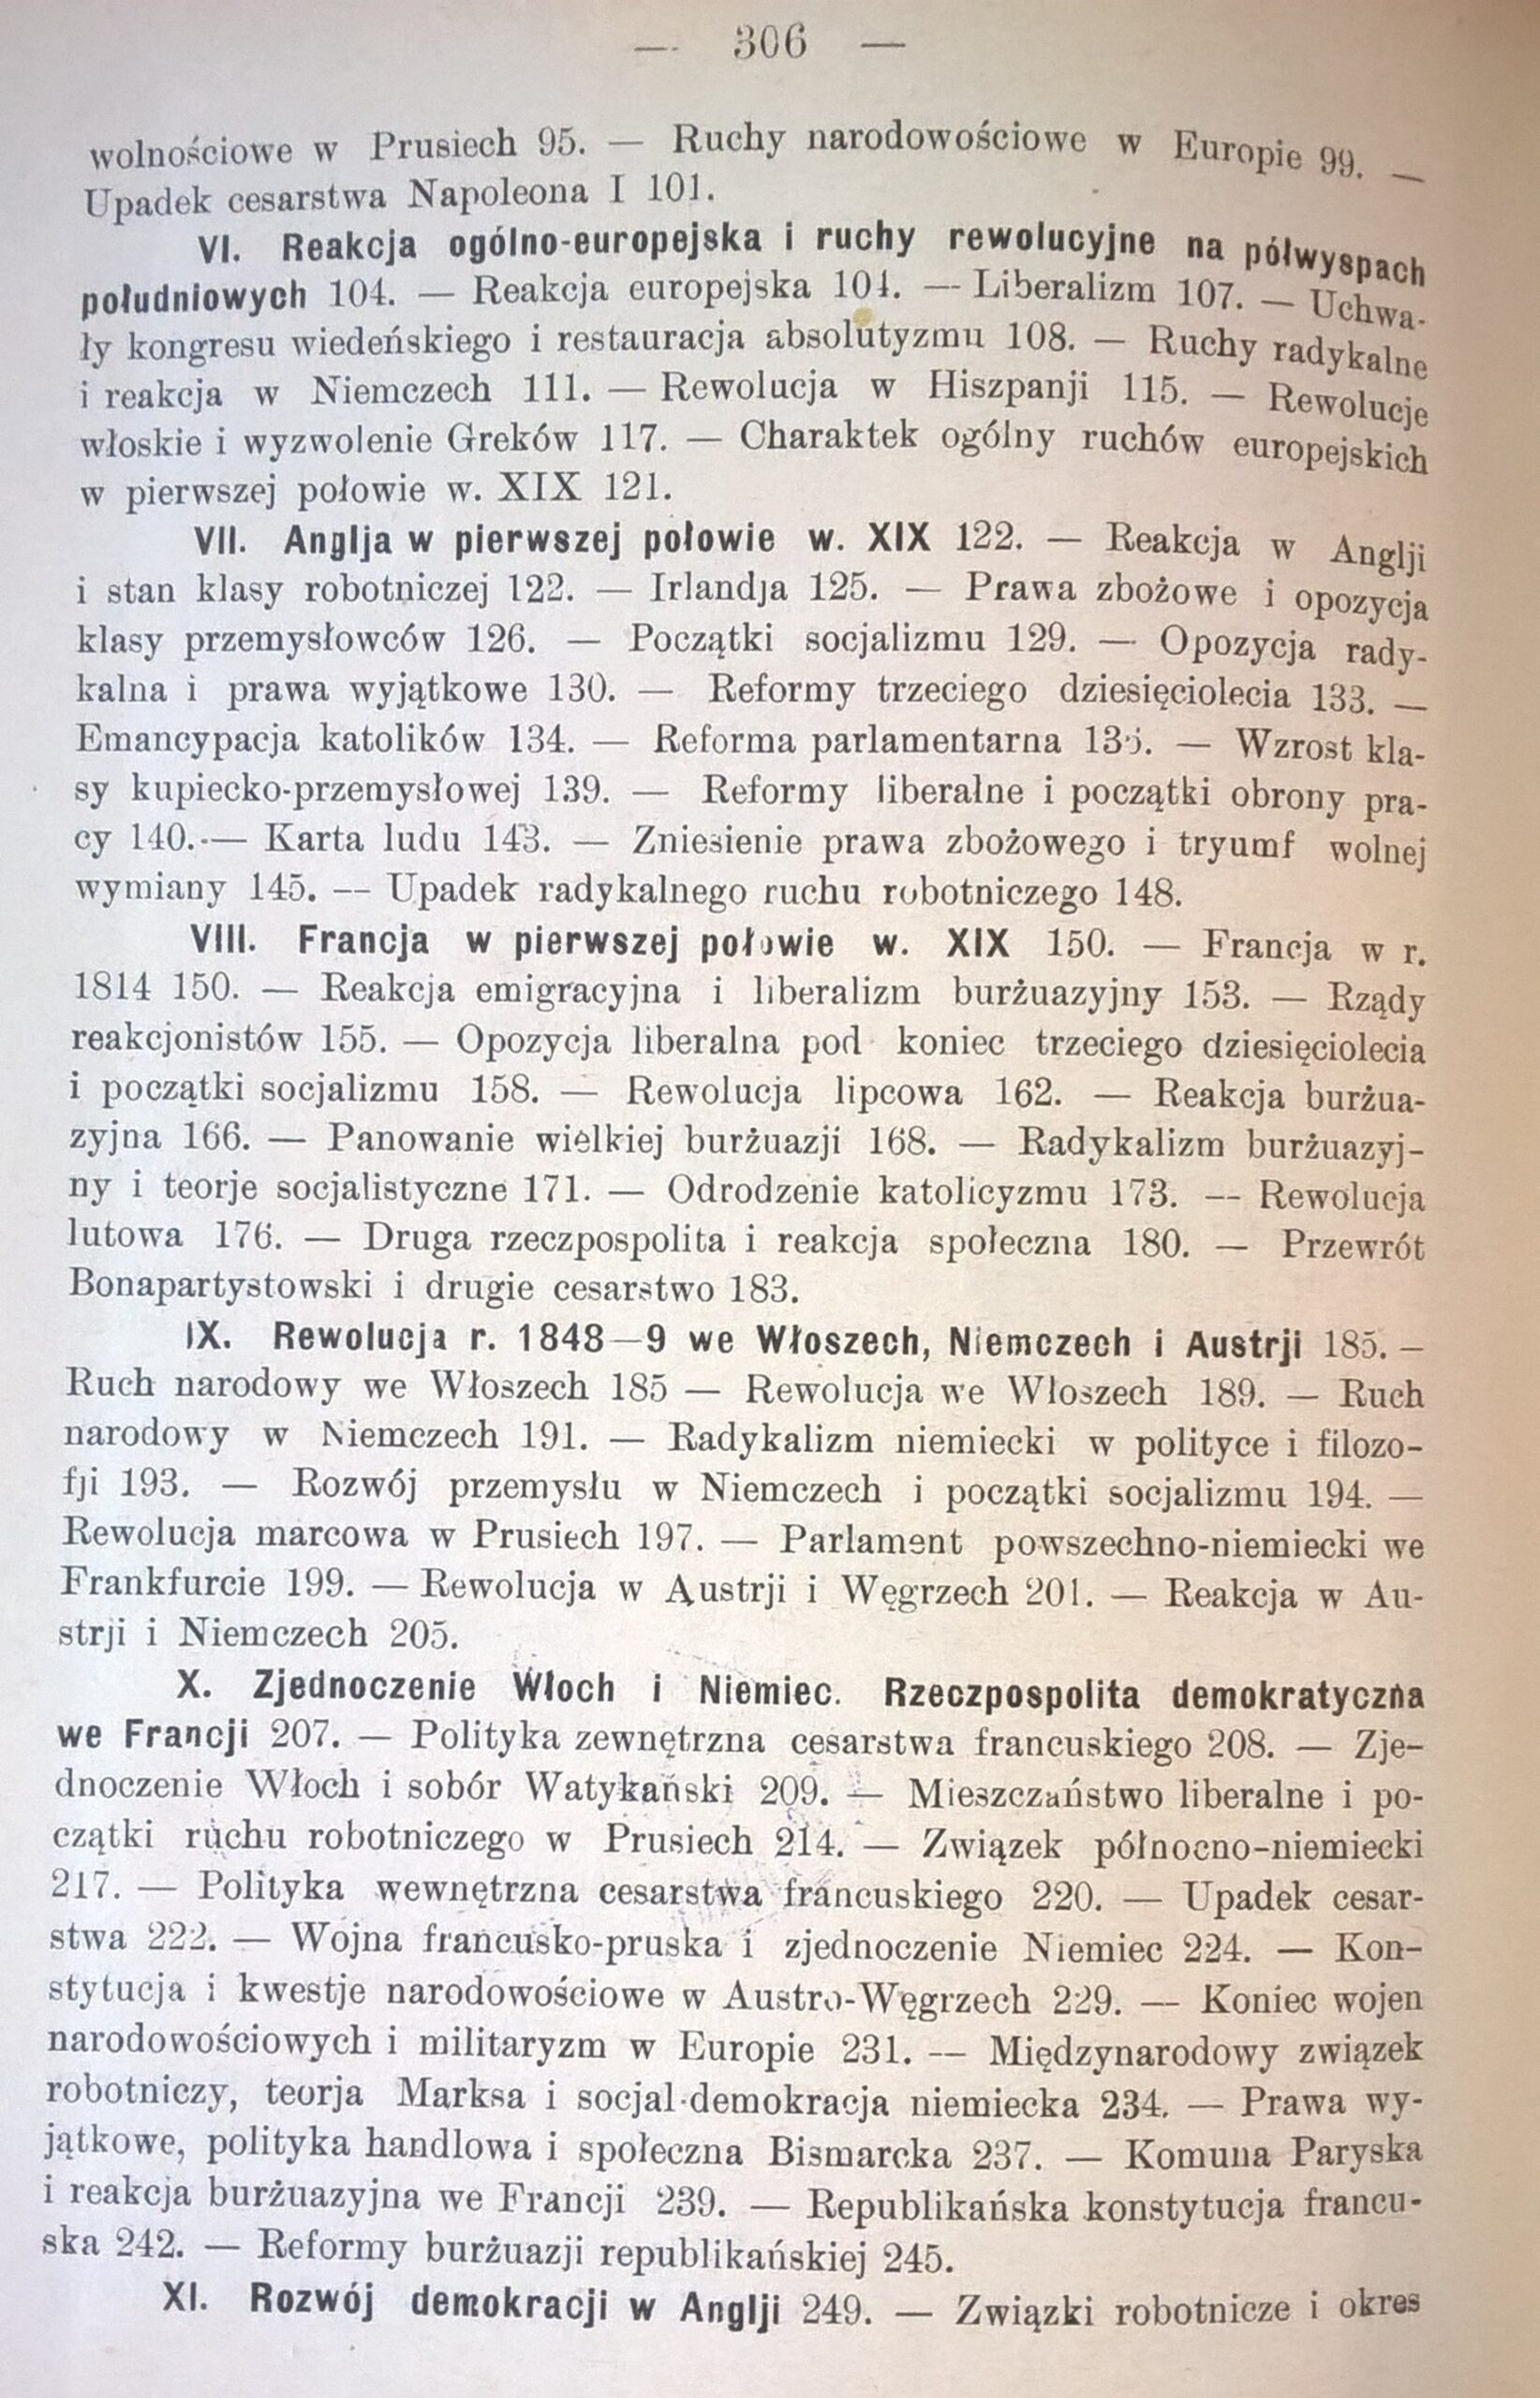 Książka "Historja nowożytna w zarysie z mapami historycznemi" Prof. R. Wipper, 1907 r.